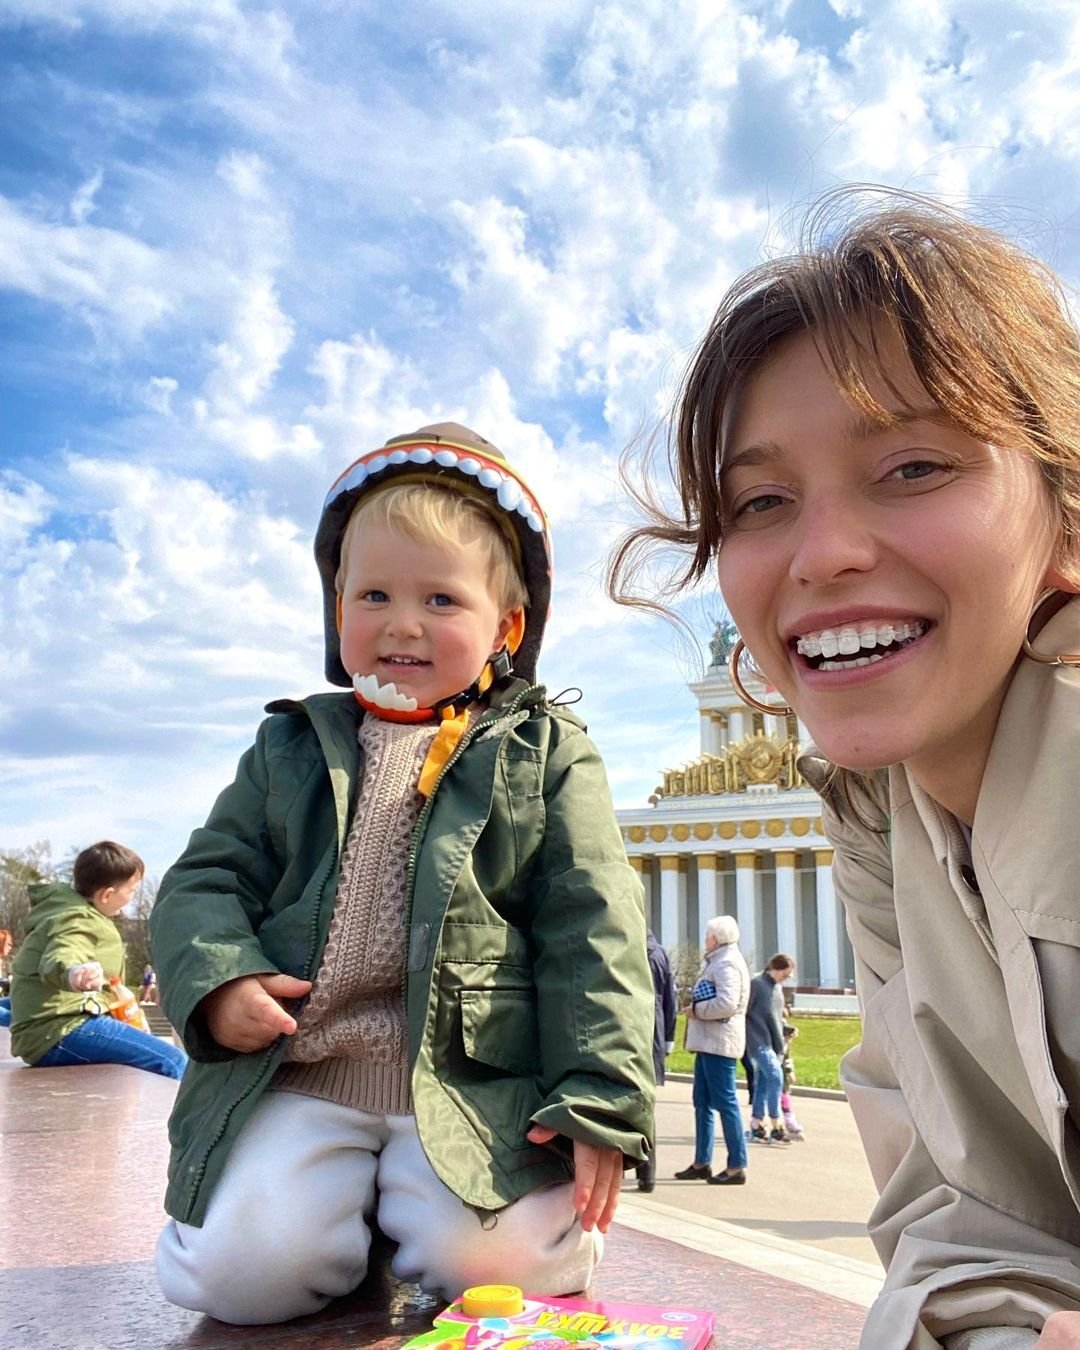 Регина Тодоренко отправилась на съёмки, оставив дома больного сына